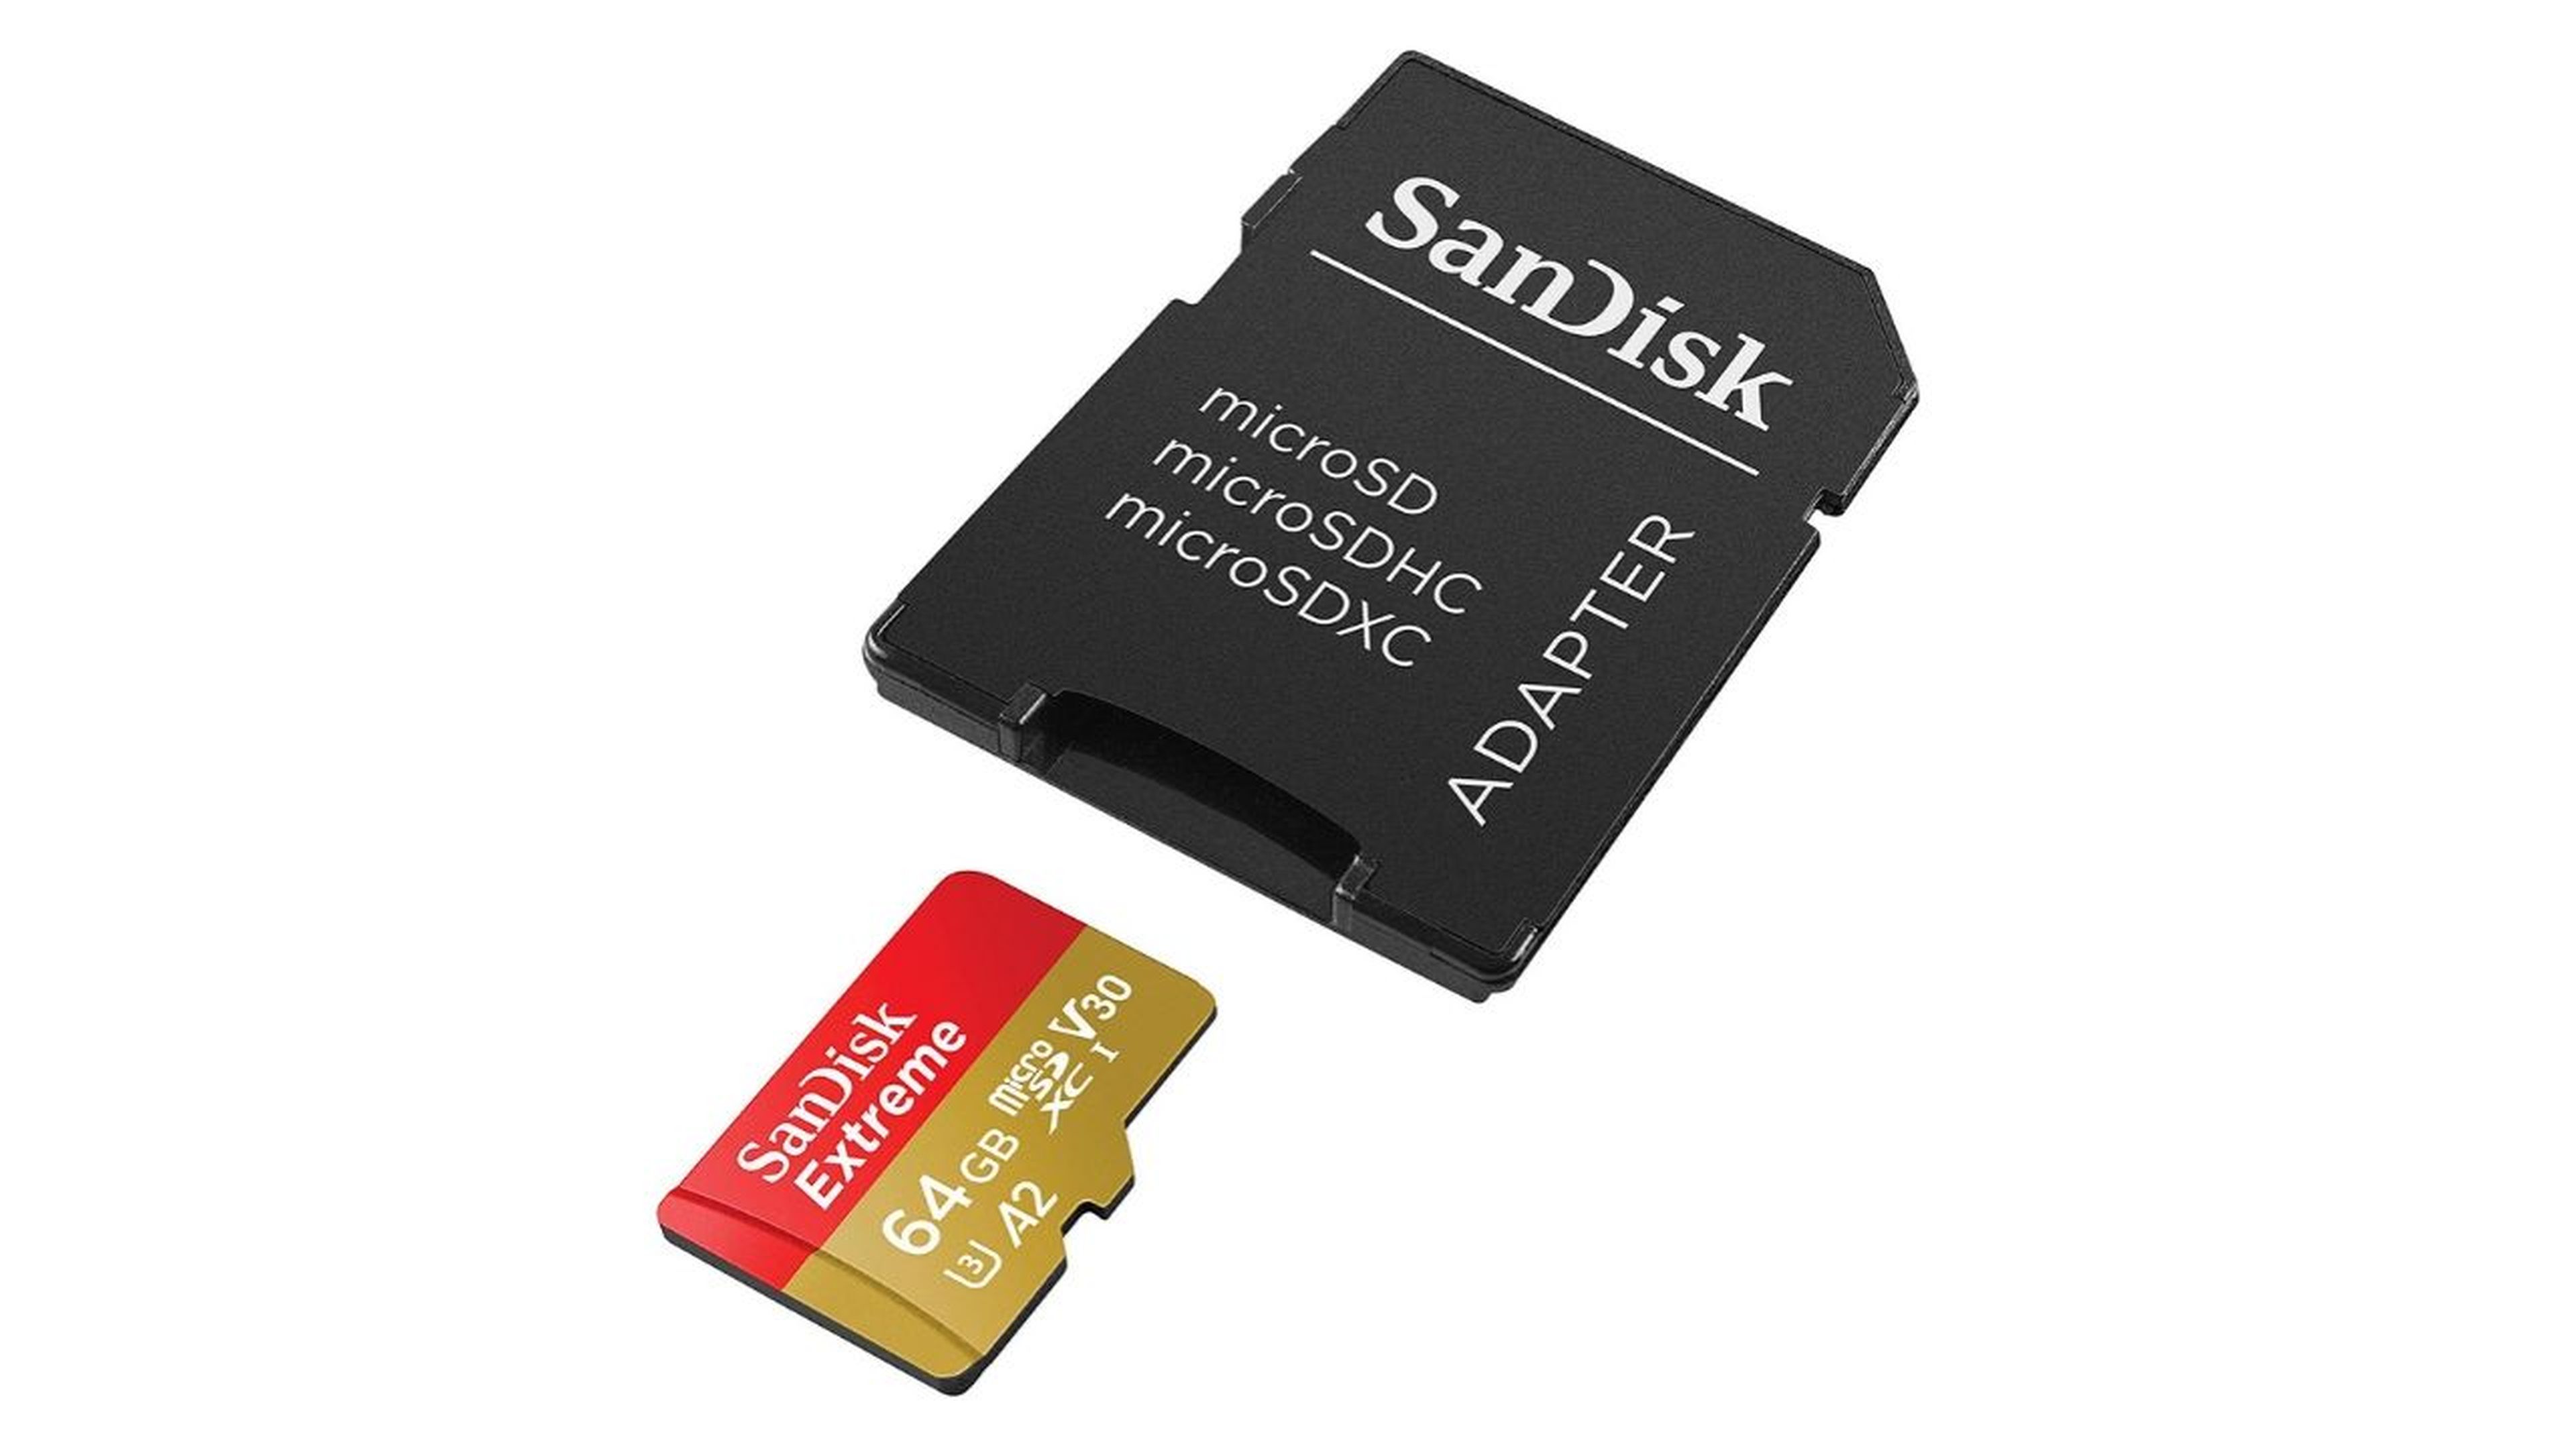 Amazon oferta esta tarjeta microSD SanDisk por 12,90 euros (-48%)